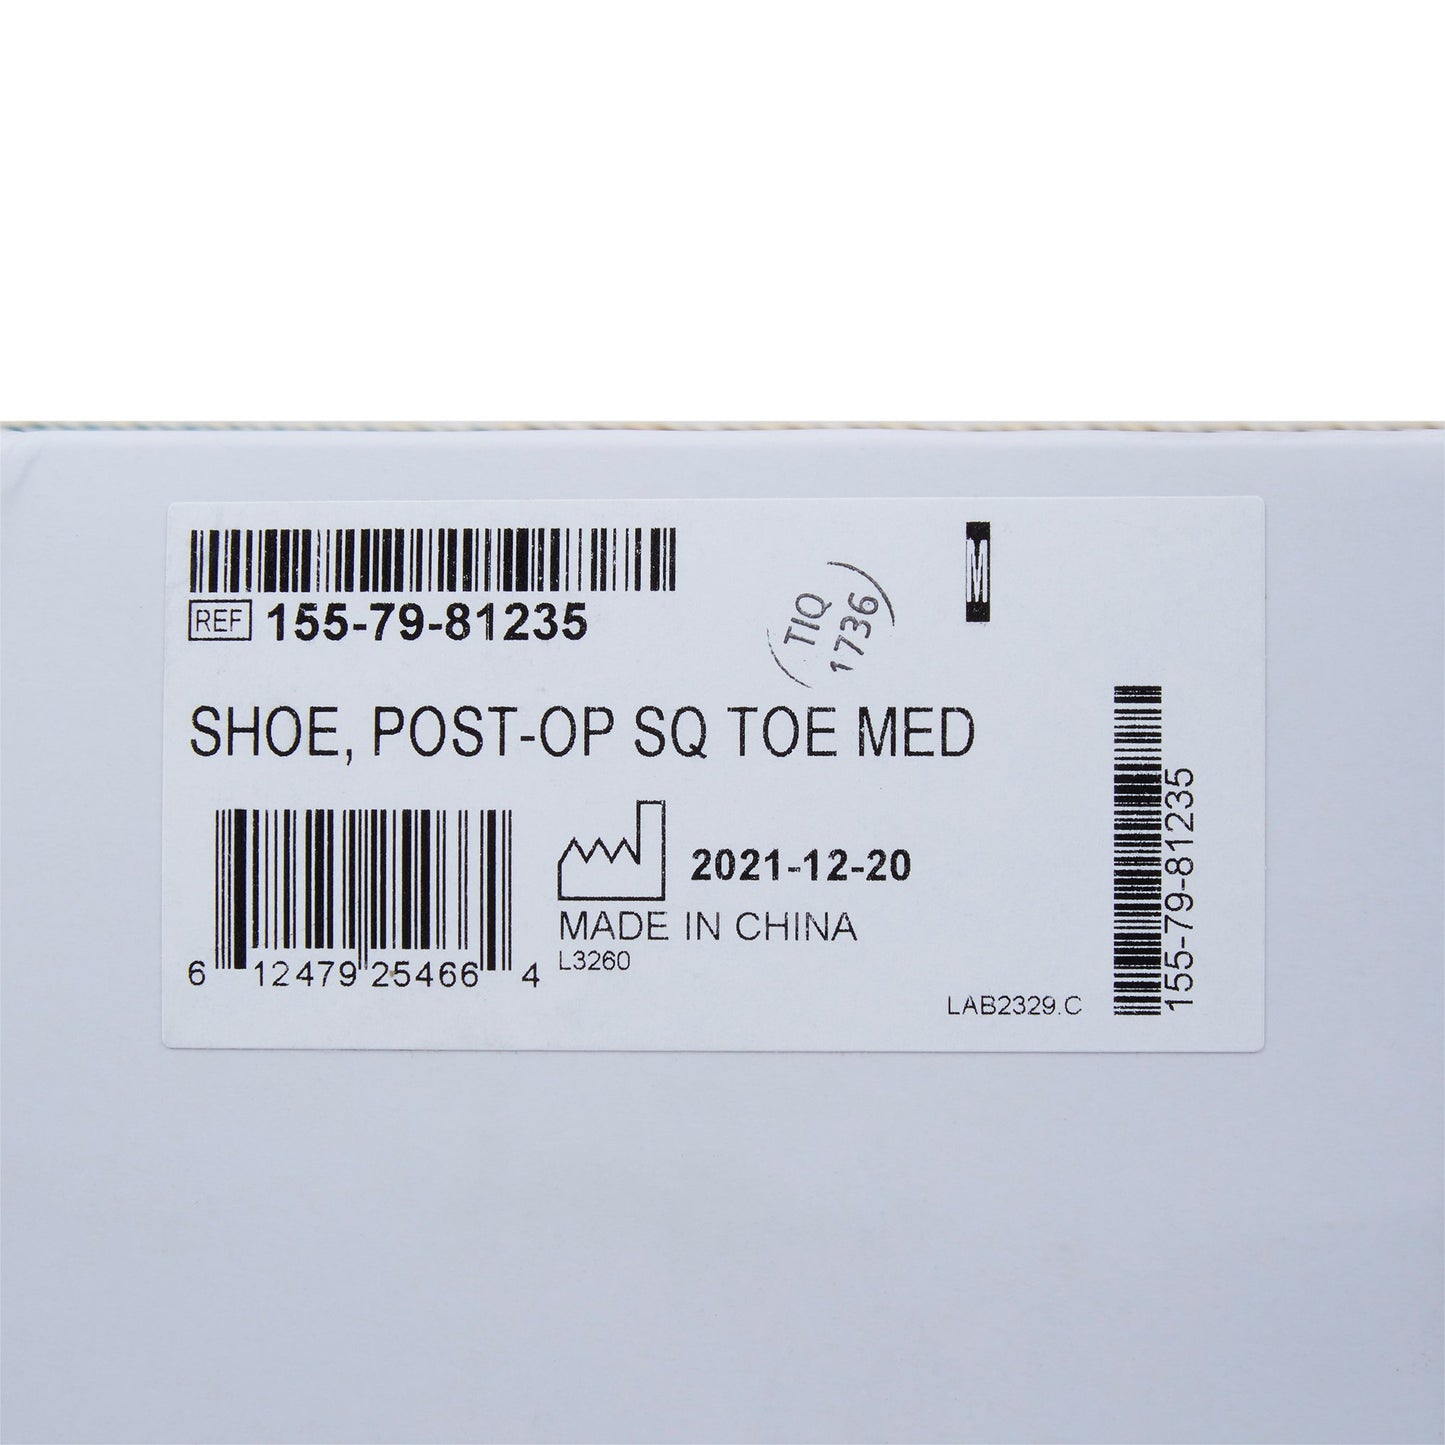 McKesson Square Toe Post-Op Shoe, Male 8.5-9.5 / Female 9.5-10.5